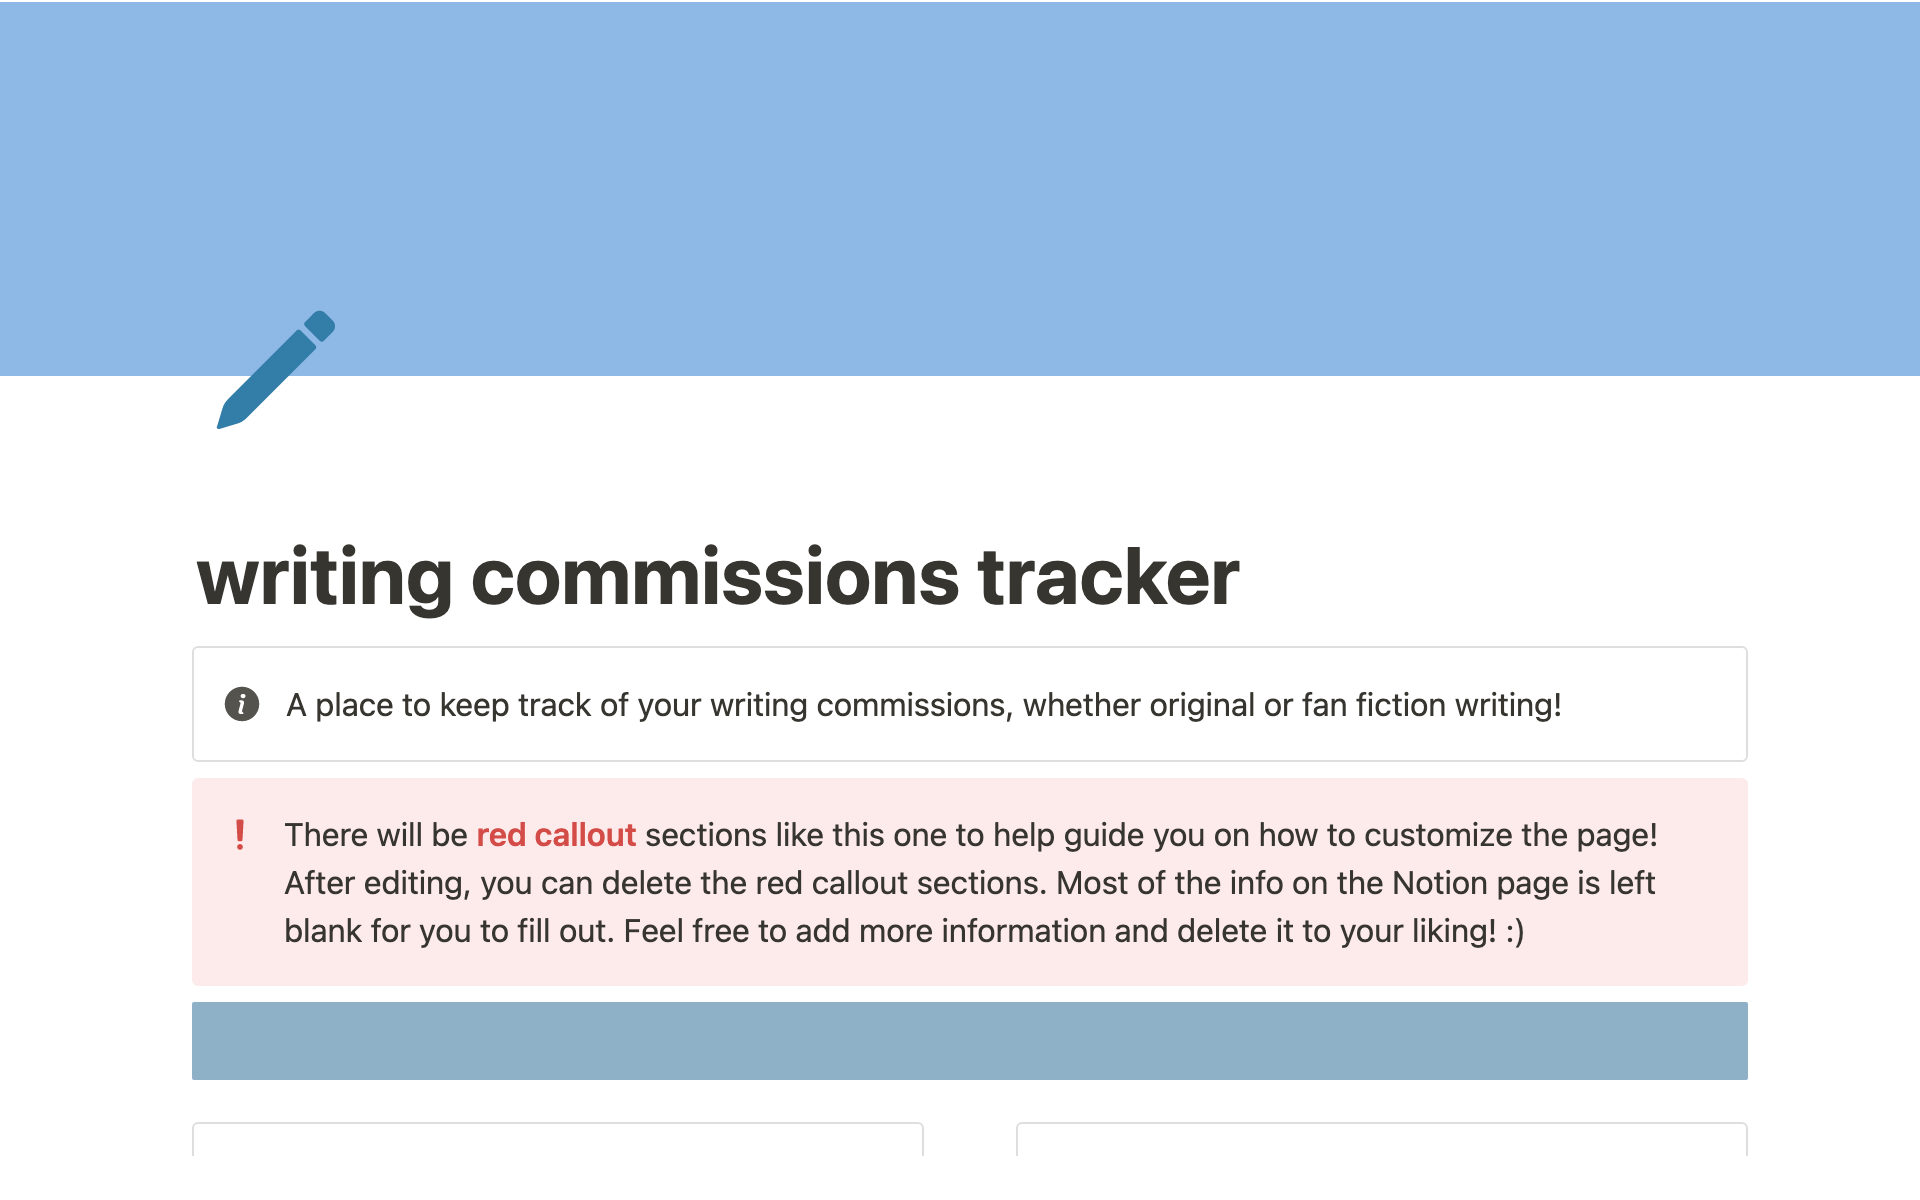 Uma prévia do modelo para Writing commissions tracker